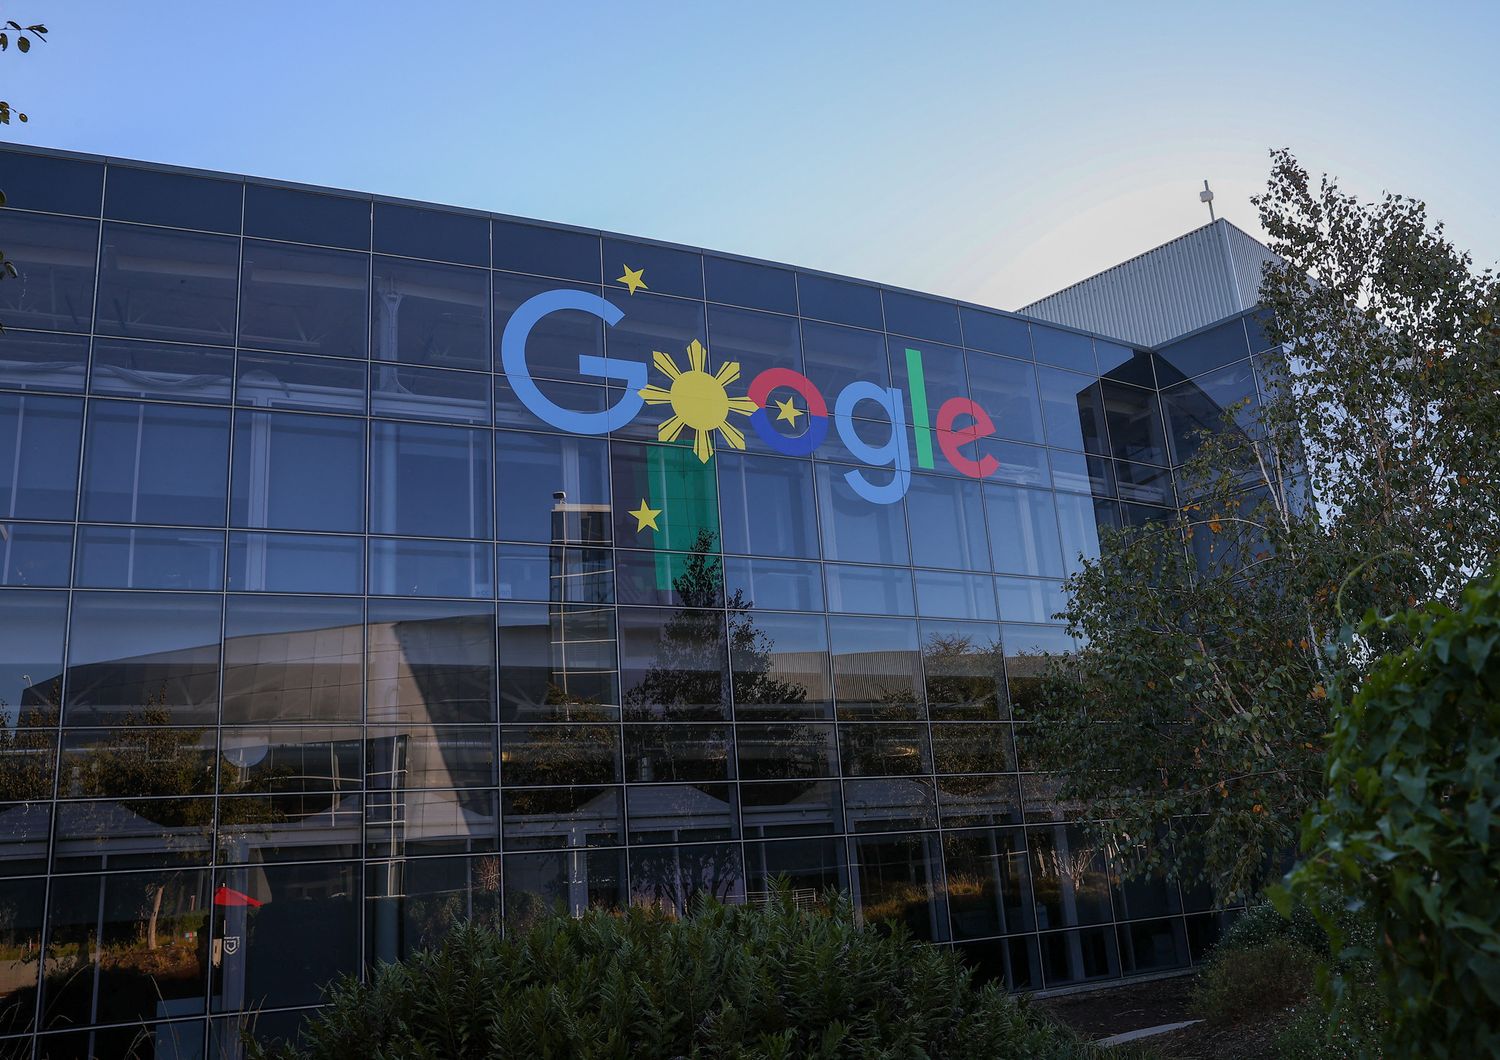 Il quartier generale di Google a Mountain View